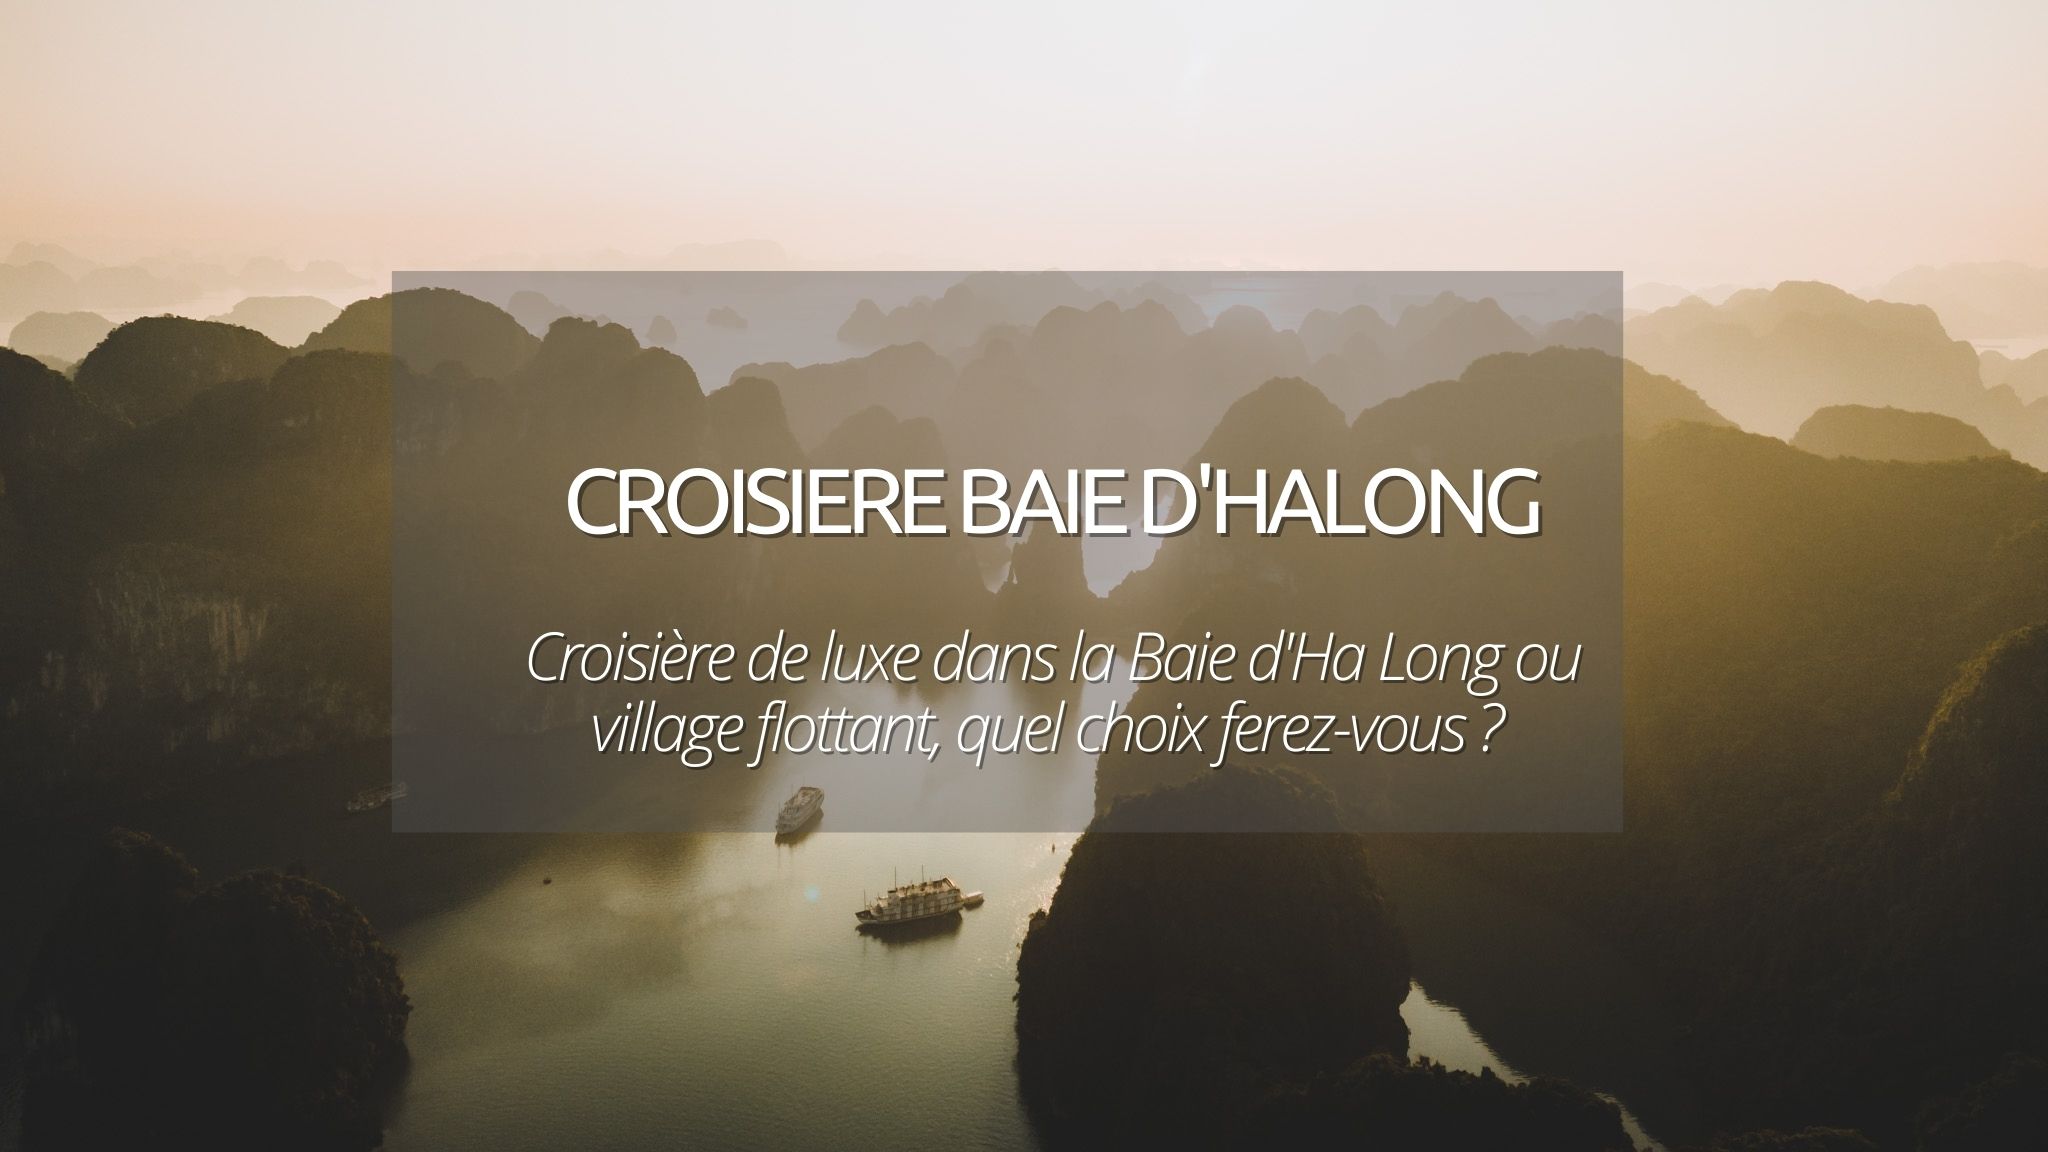 Une croisière sur la baie d’Halong : ça donne quoi ? On vous raconte notre expérience !